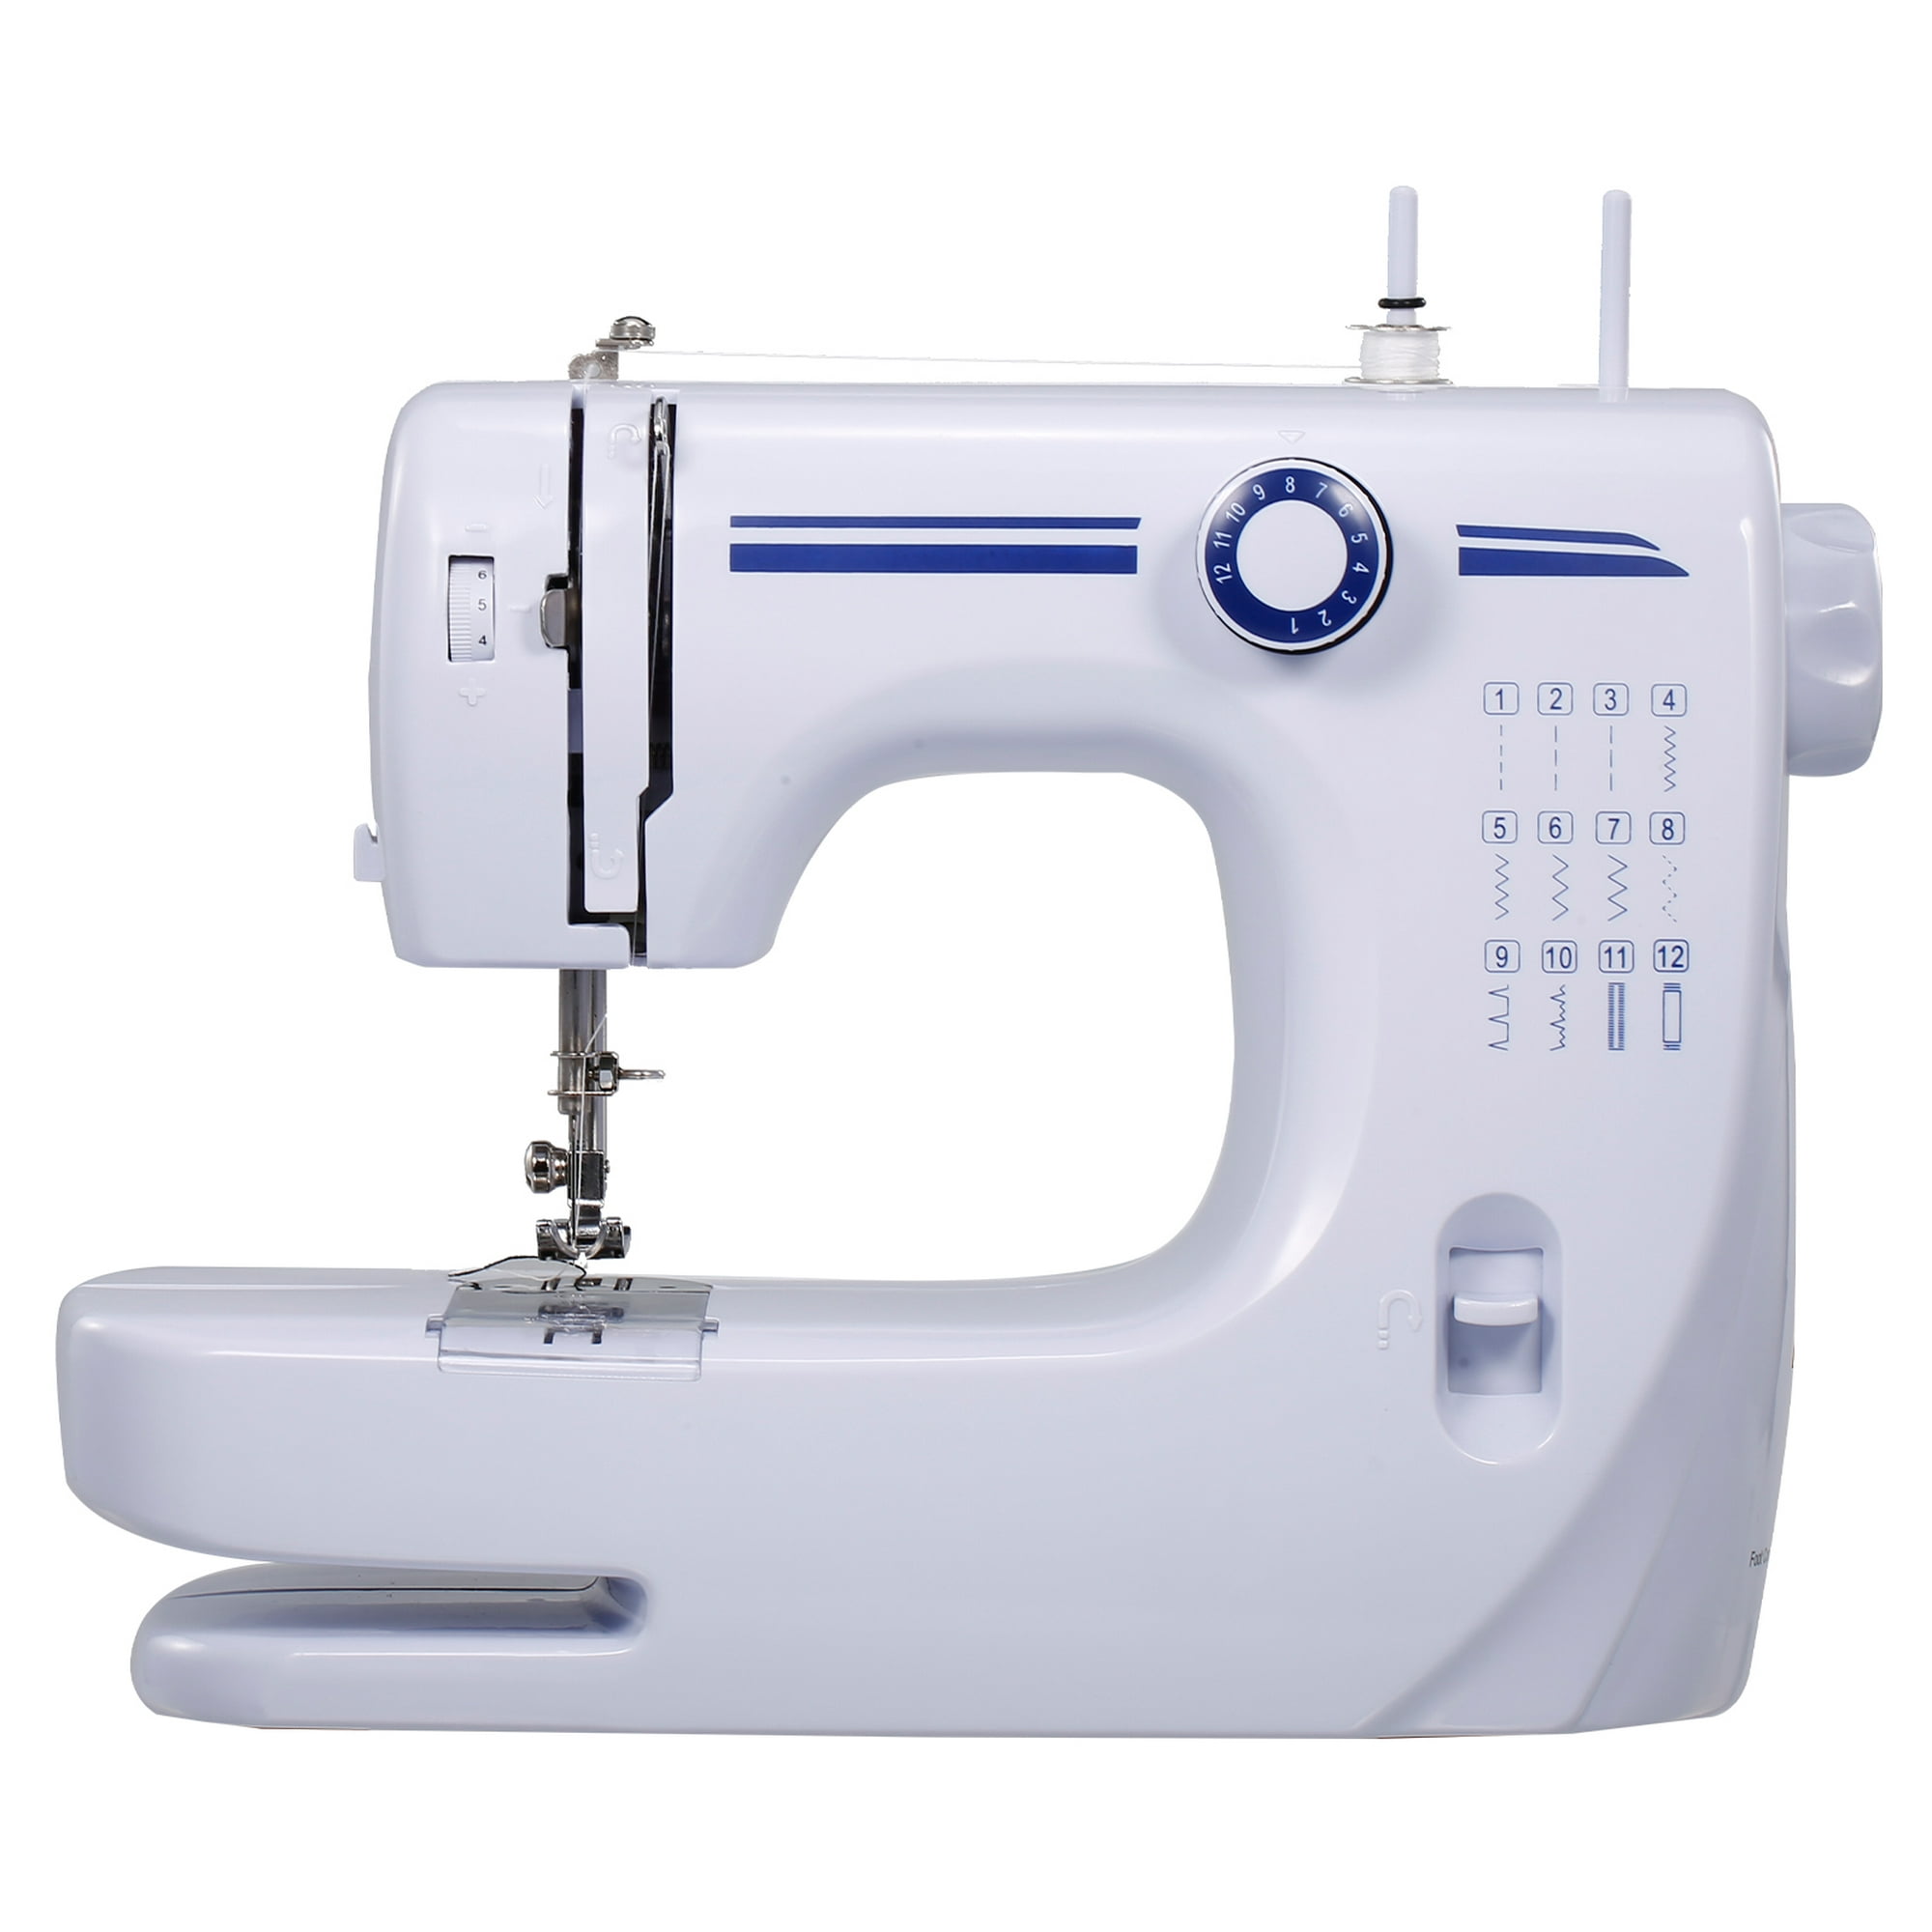 Maquina de coser 12 patrones puntadas integradas. Usa 4 baterias